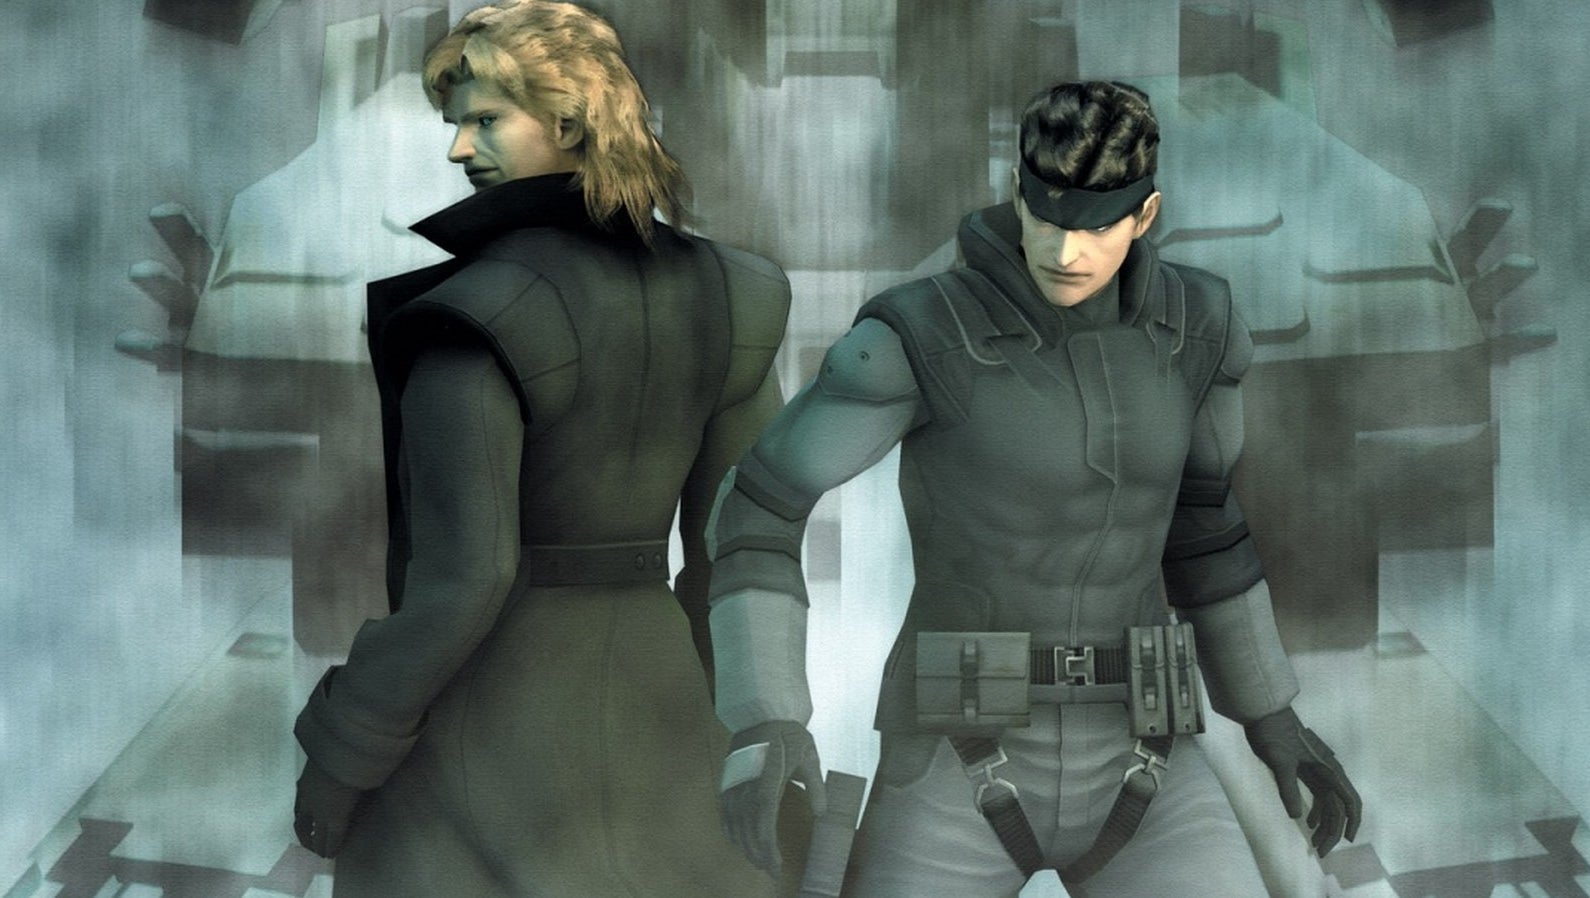 Bilder zu Metal Gear Solid: The Twin Snakes wird heute 18 Jahre alt